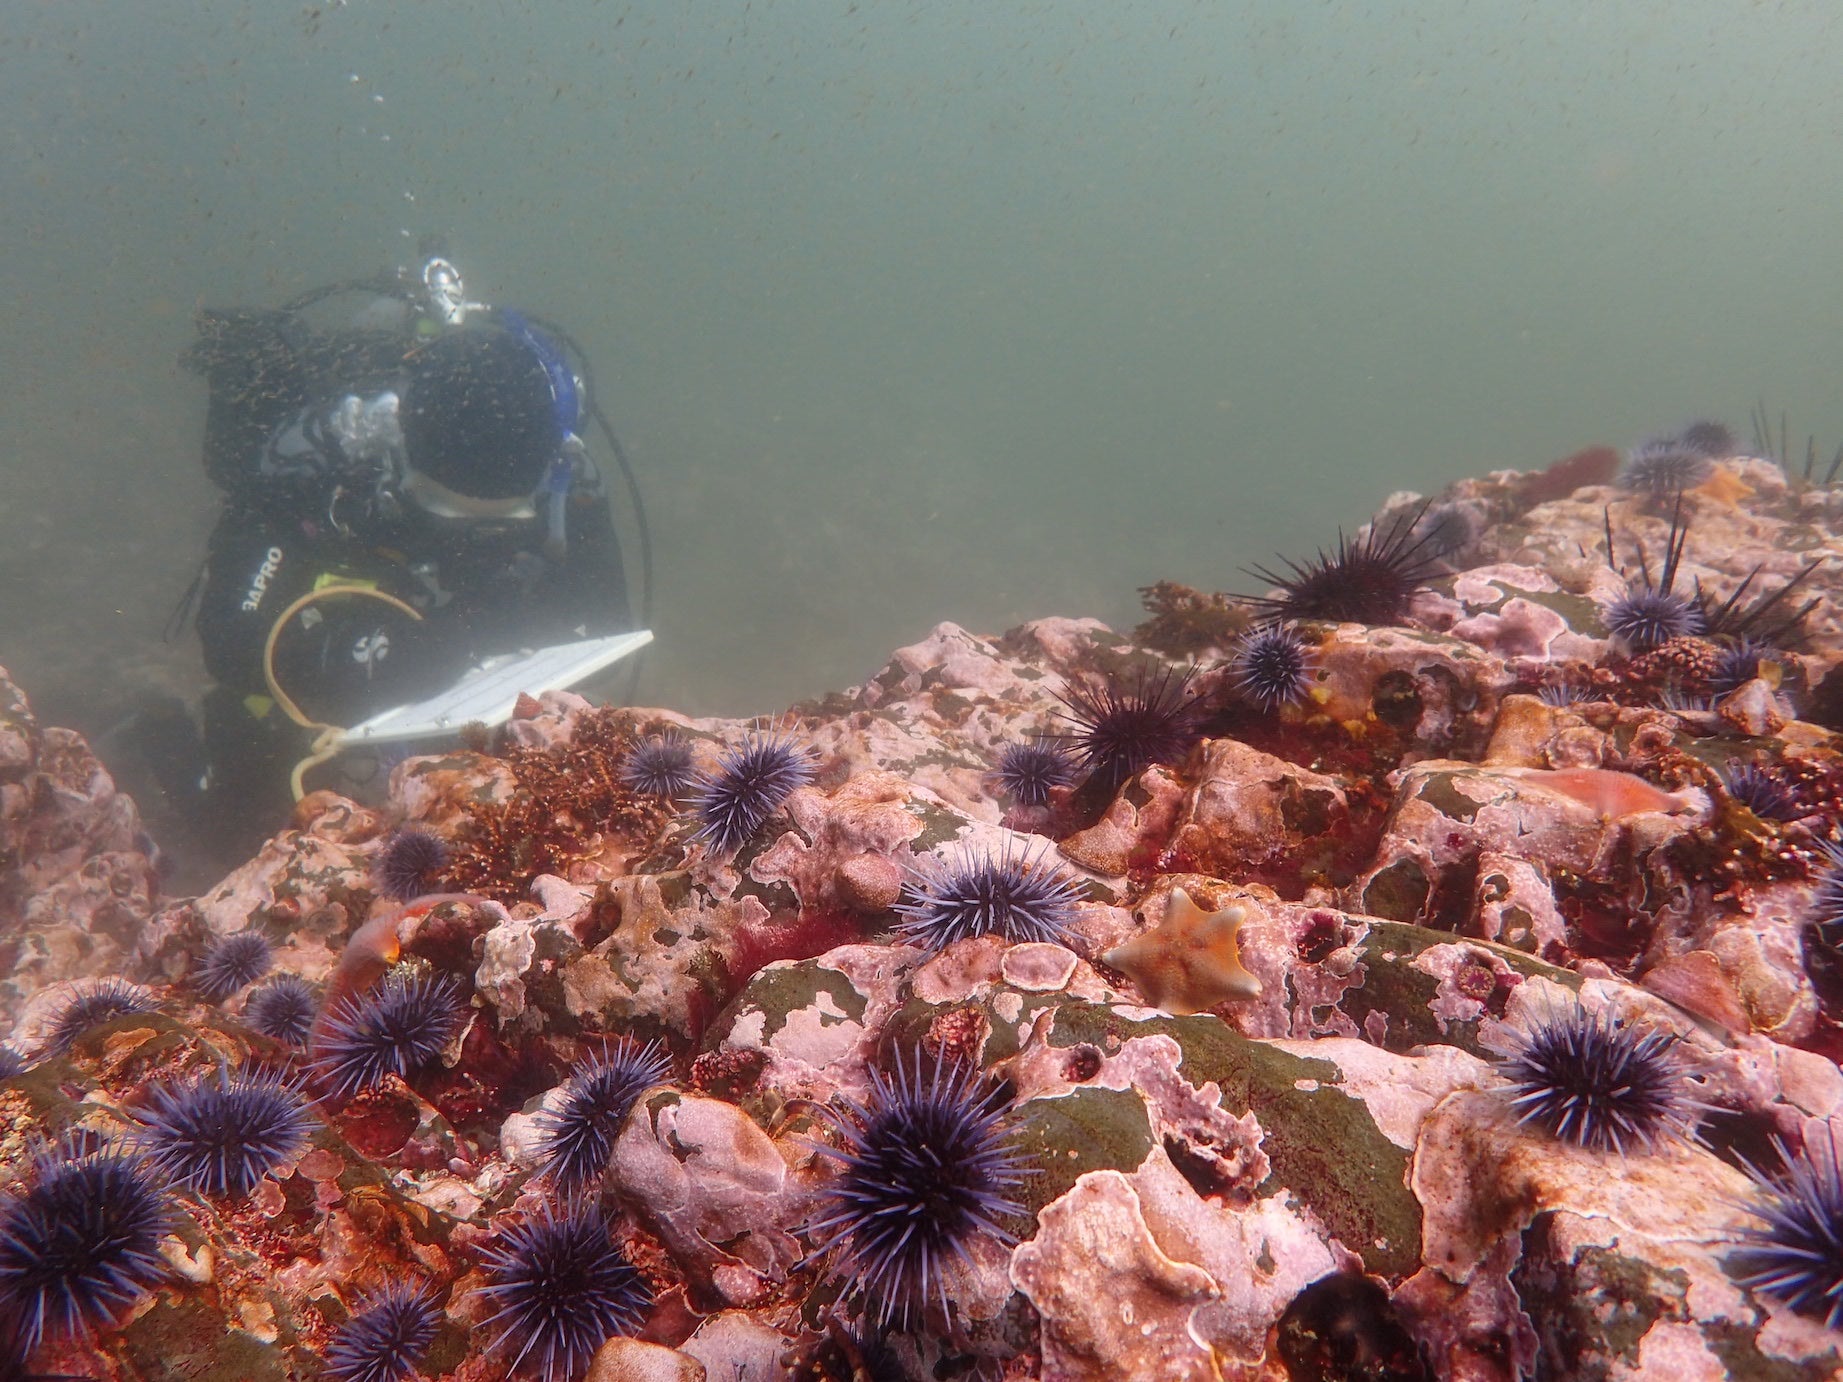 scientific diver in urchin barrens